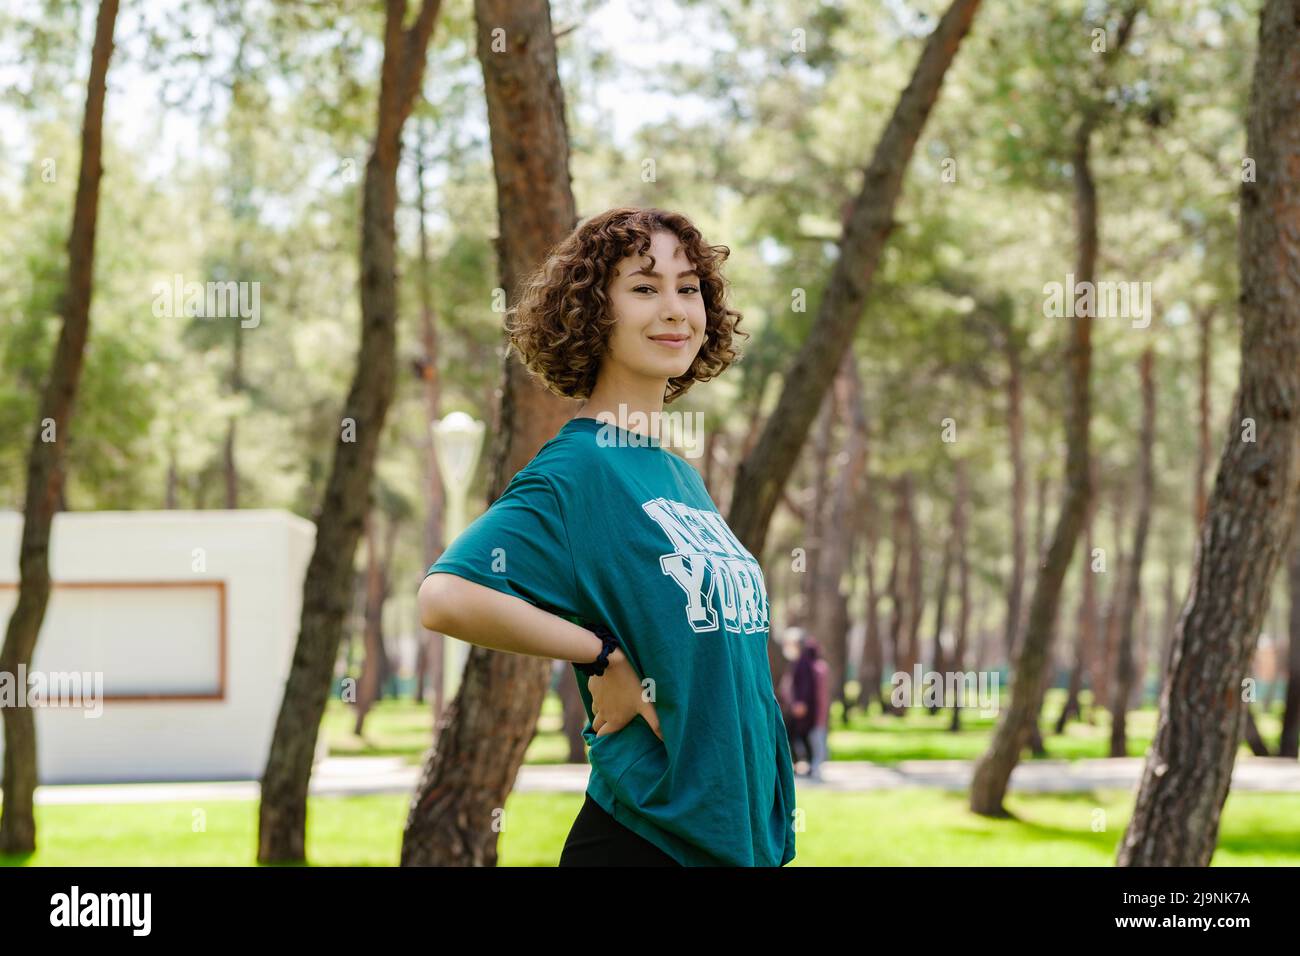 Seitenansicht einer jungen Rotschopf-Frau in einem grünen T-Shirt, die auf dem Stadtpark steht, im Freien die Hände an den Hüften hält und mit großem Lächeln auf die Kamera blickt. Sm Stockfoto